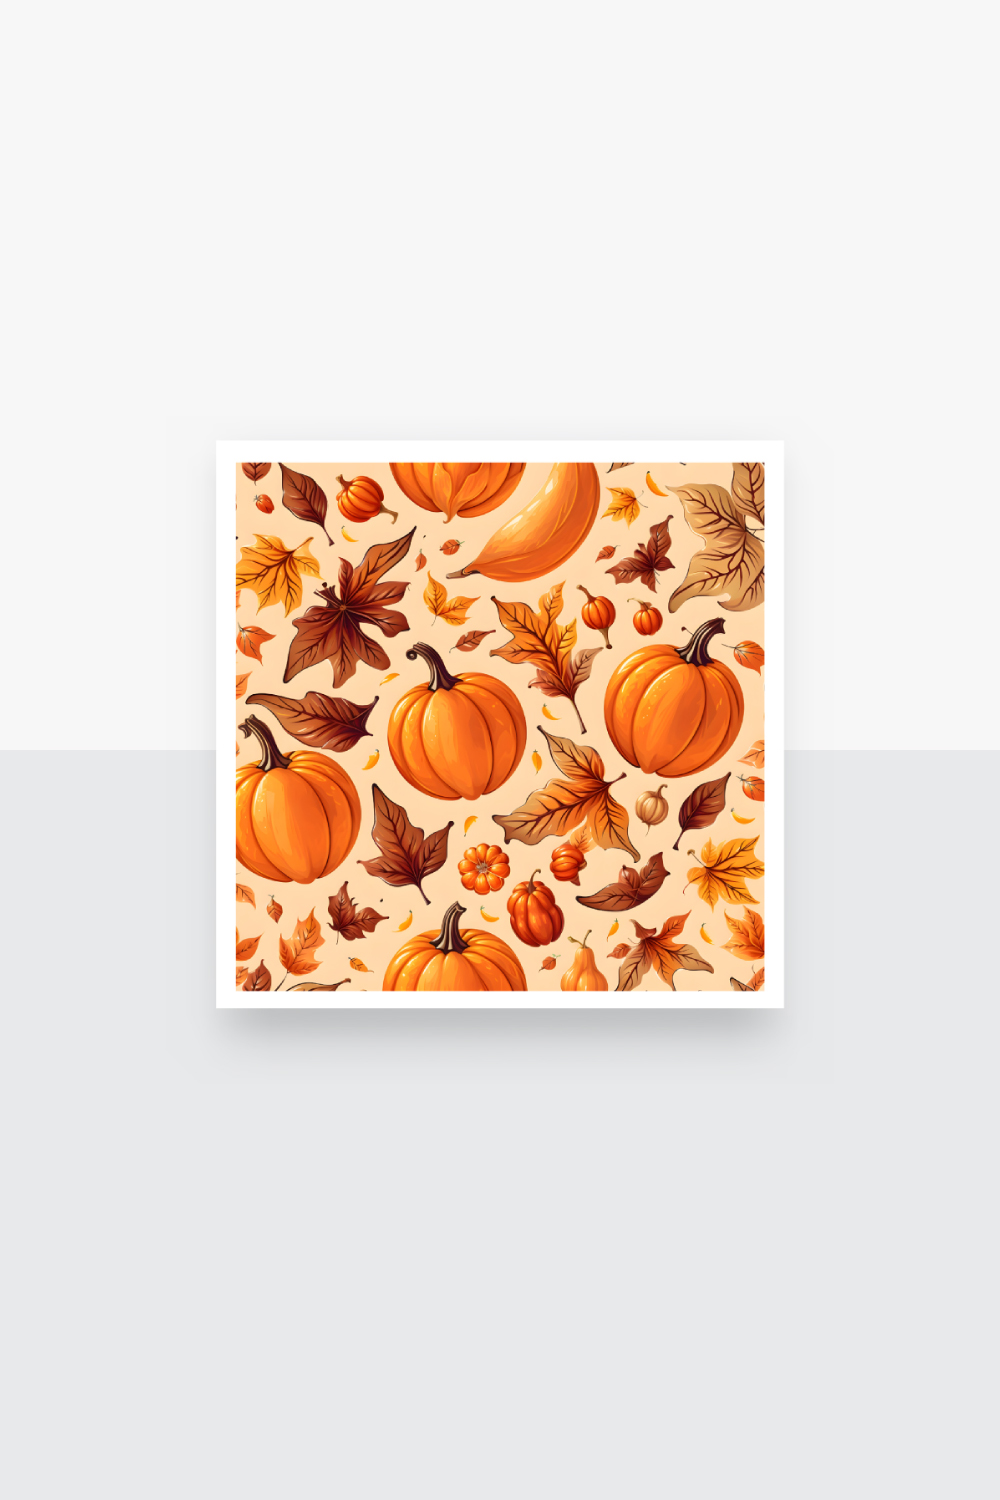 3D Autumn Pumpkins Pattern Clipart pinterest preview image.